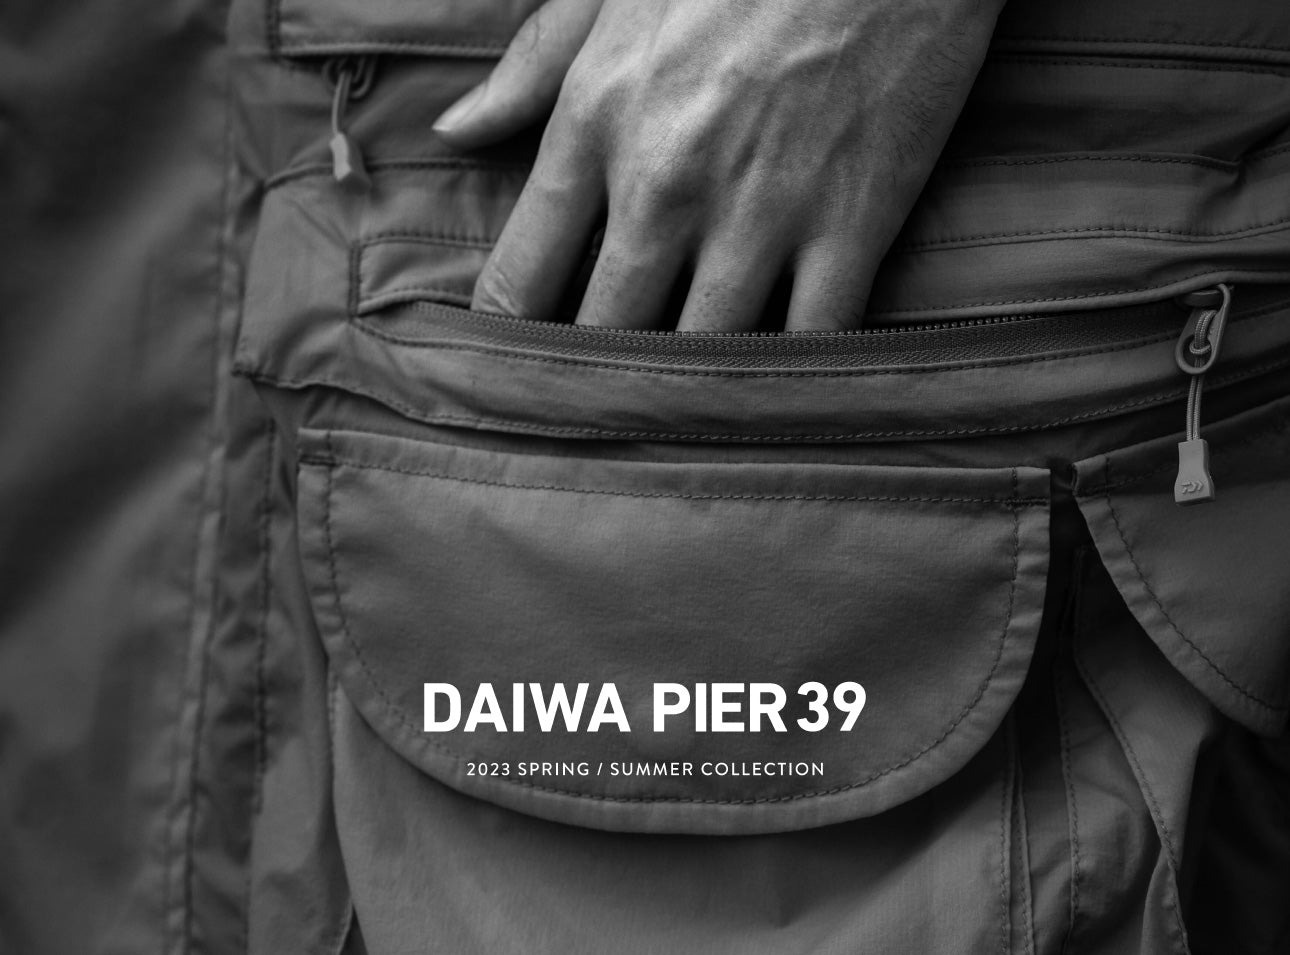 DAIWA PIER39 SPRING SUMMER 2023